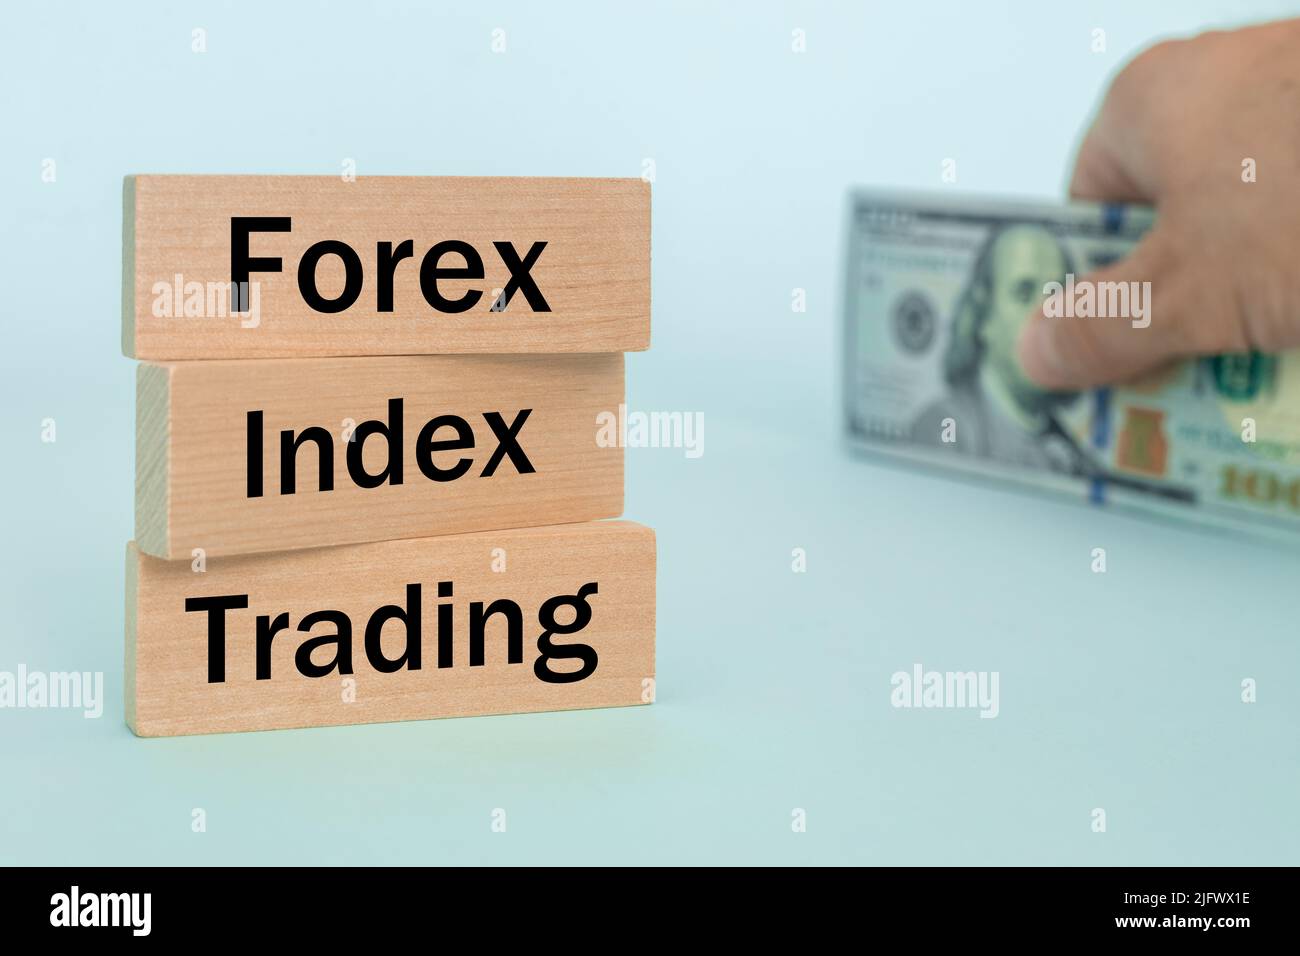 Holzblöcke mit den Worten Forex, Index, Trading, Concept, Non-Stock Currency Market, Geldwechsel der wichtigsten Institutionen der Welt Stockfoto